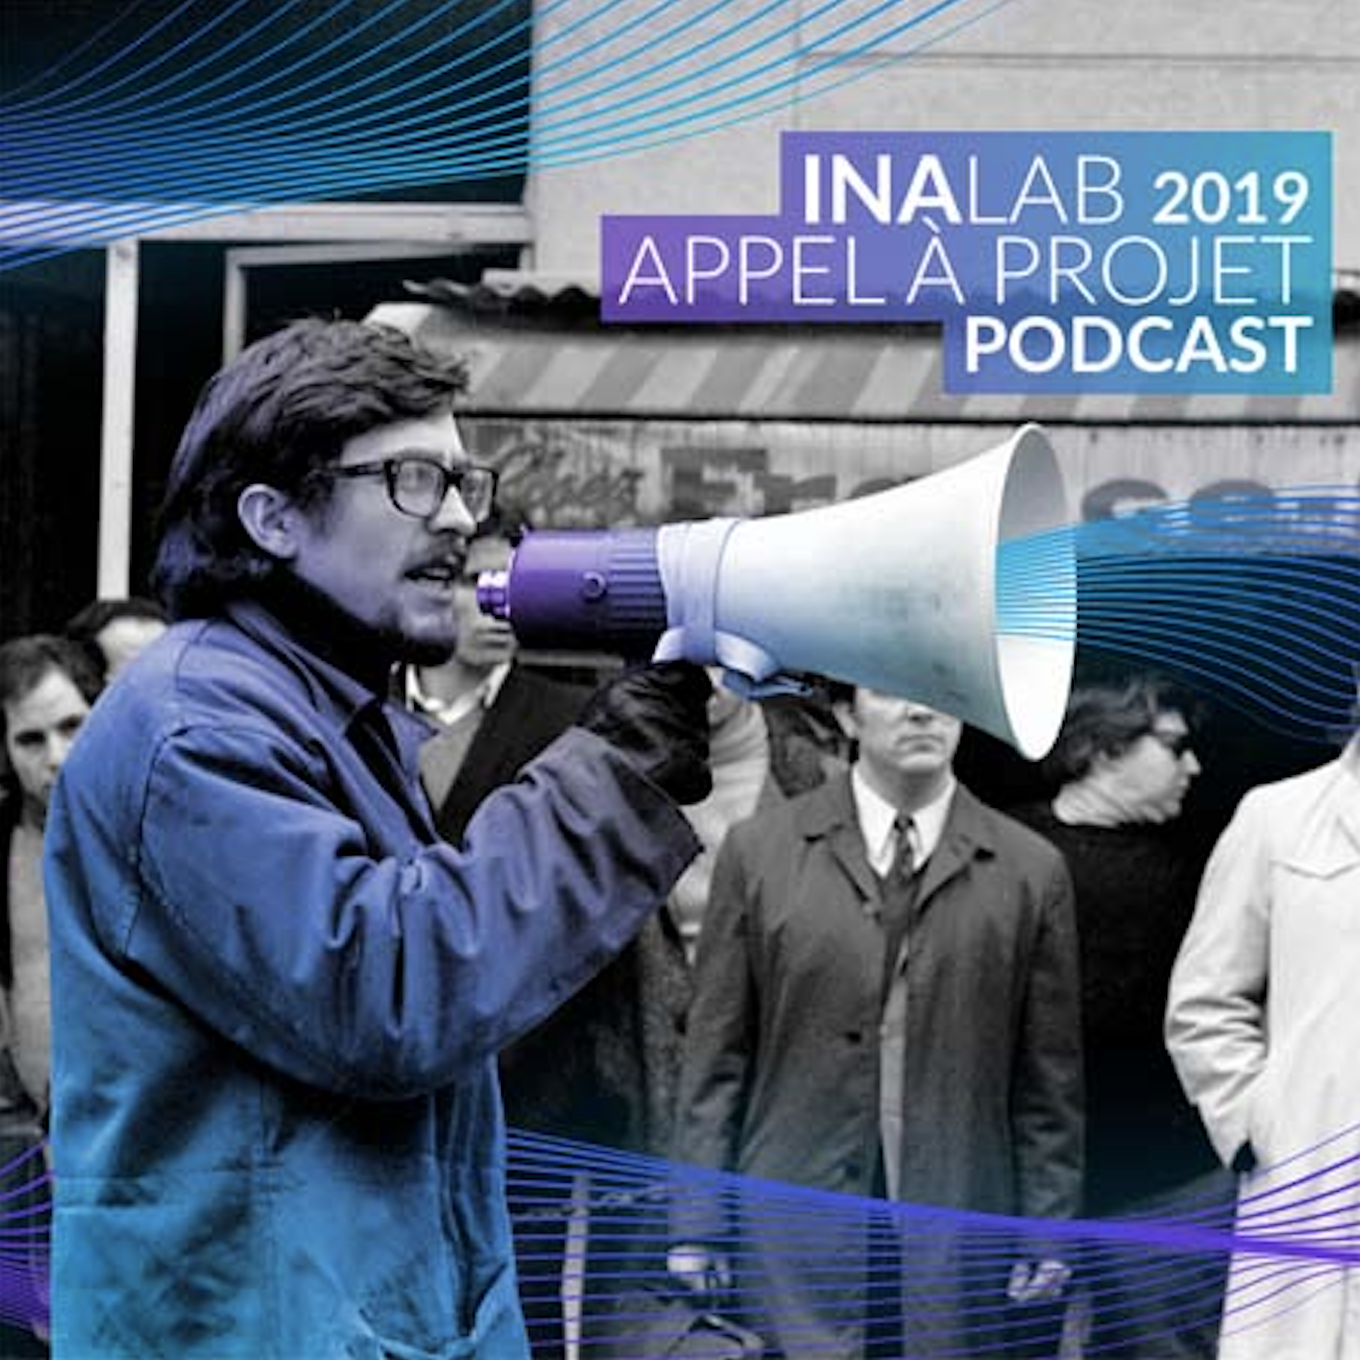 Appel à projets INALAB 2019 sous le signe du podcast